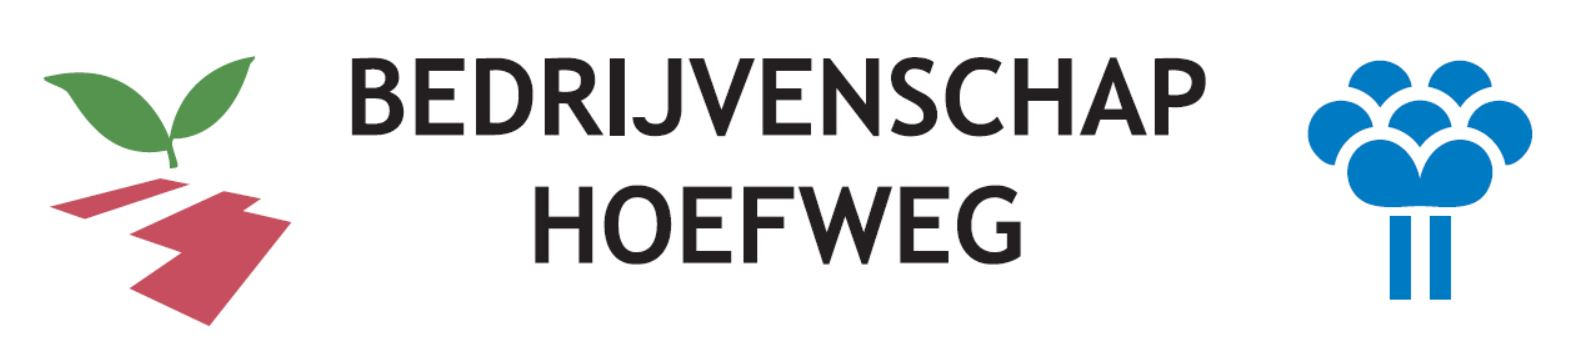 Logo van Bedrijvenschap Hoefweg